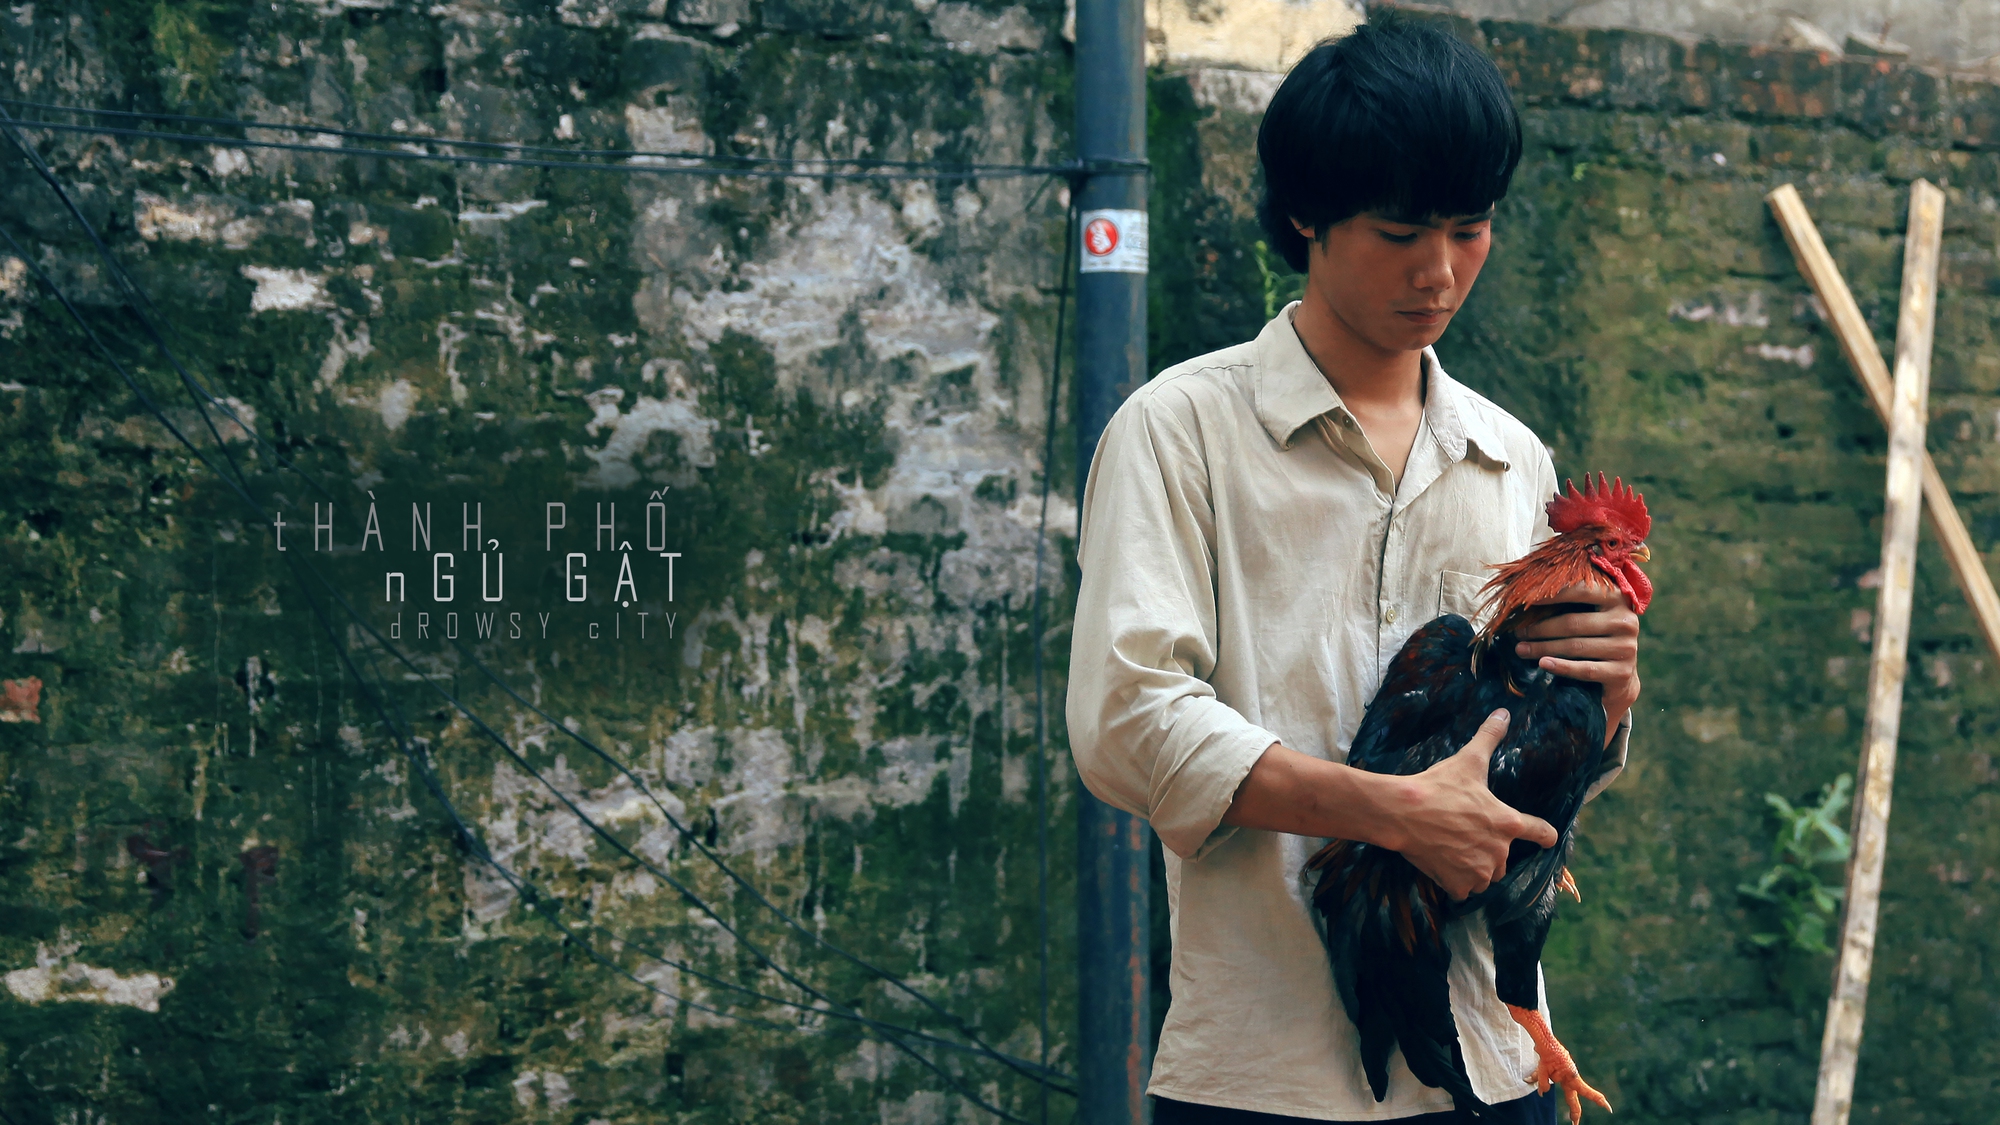 Phim Việt 18+ &quot;Thành phố ngủ gật&quot; ra mắt tháng 10 - Ảnh 1.